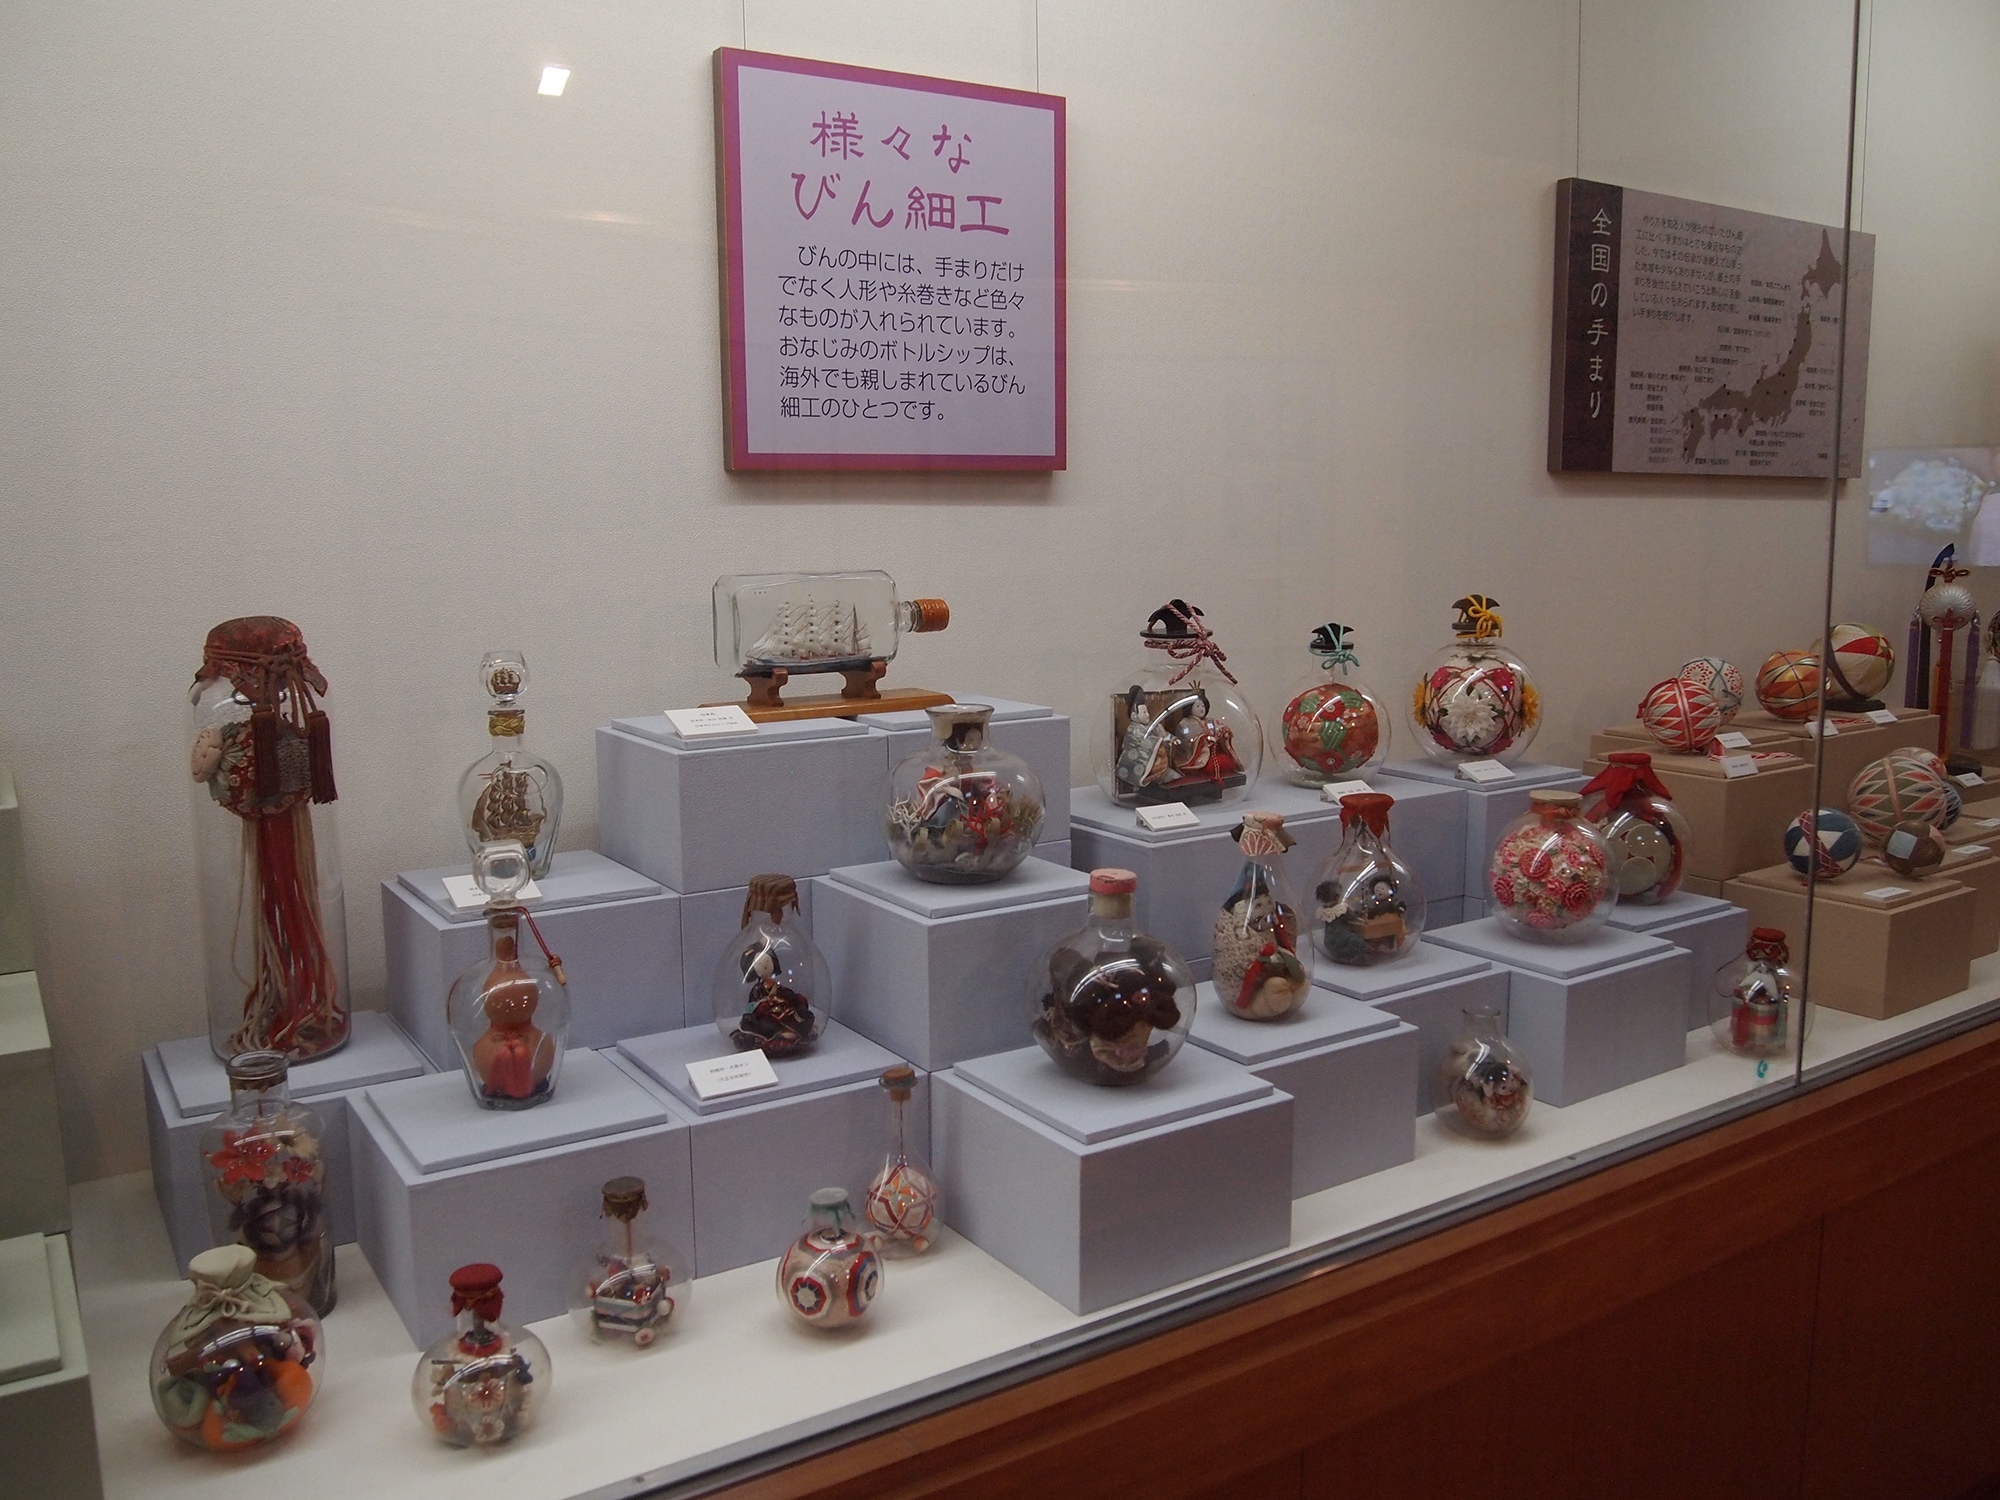 愛知川びんてまりの館 | 滋賀県博物館協議会